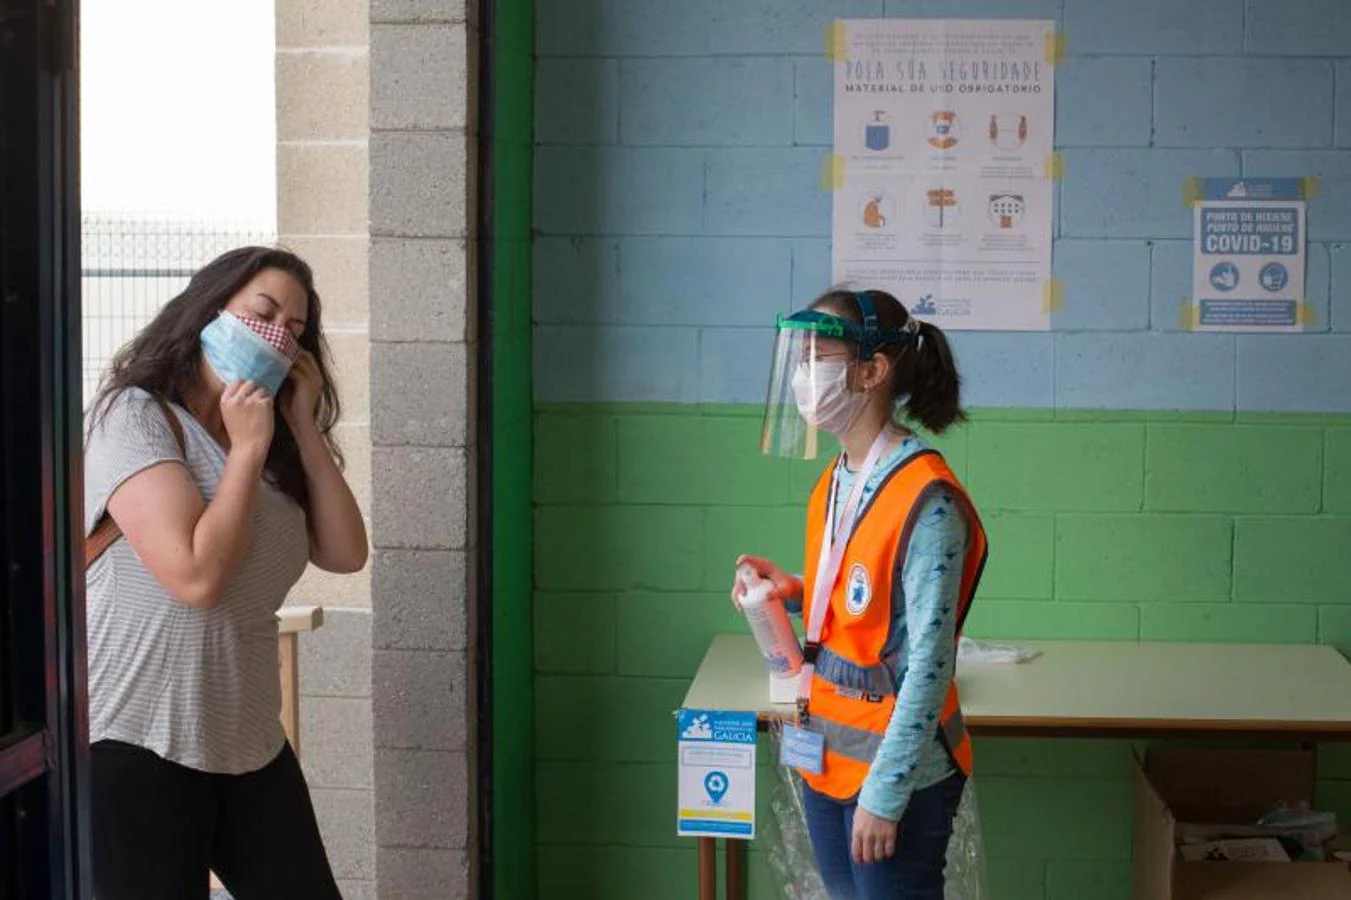 Desinfeccion de manos antes de entrar en el colegio electoral de Burela (Galicia)